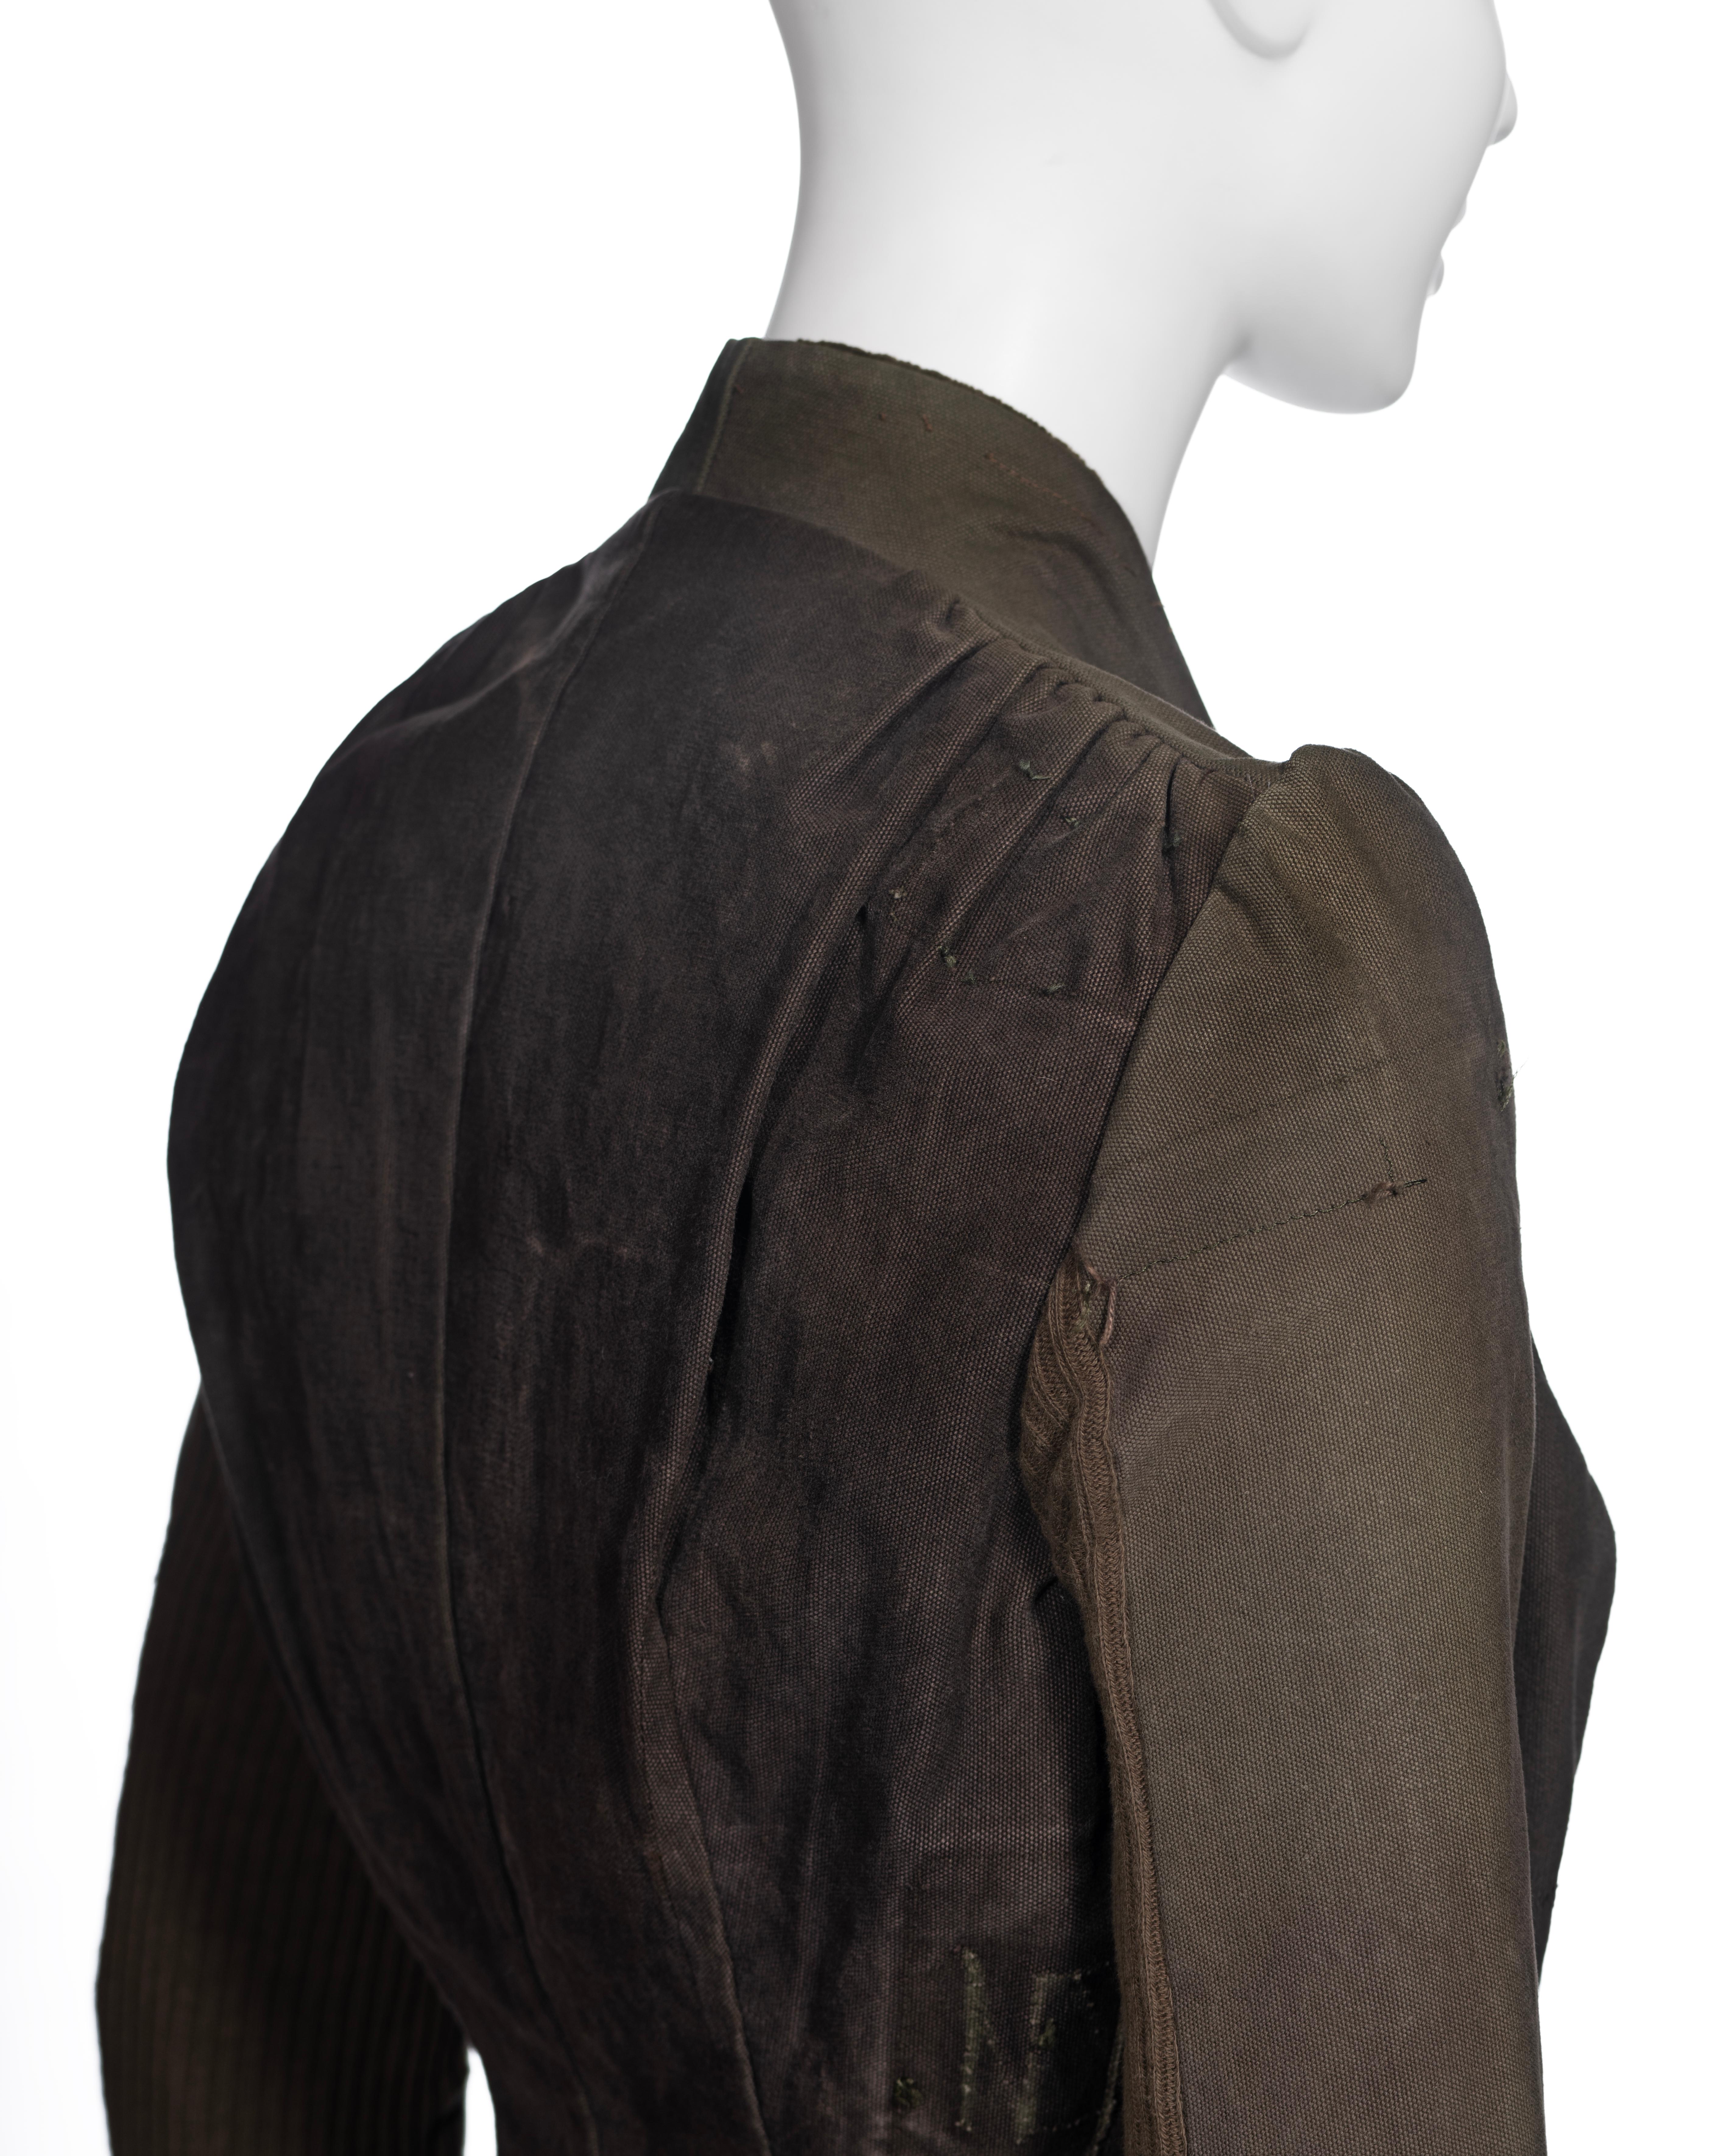 Veste de Rick Owens fabriquée à partir de sacs militaires déclassés, vers 1998 7